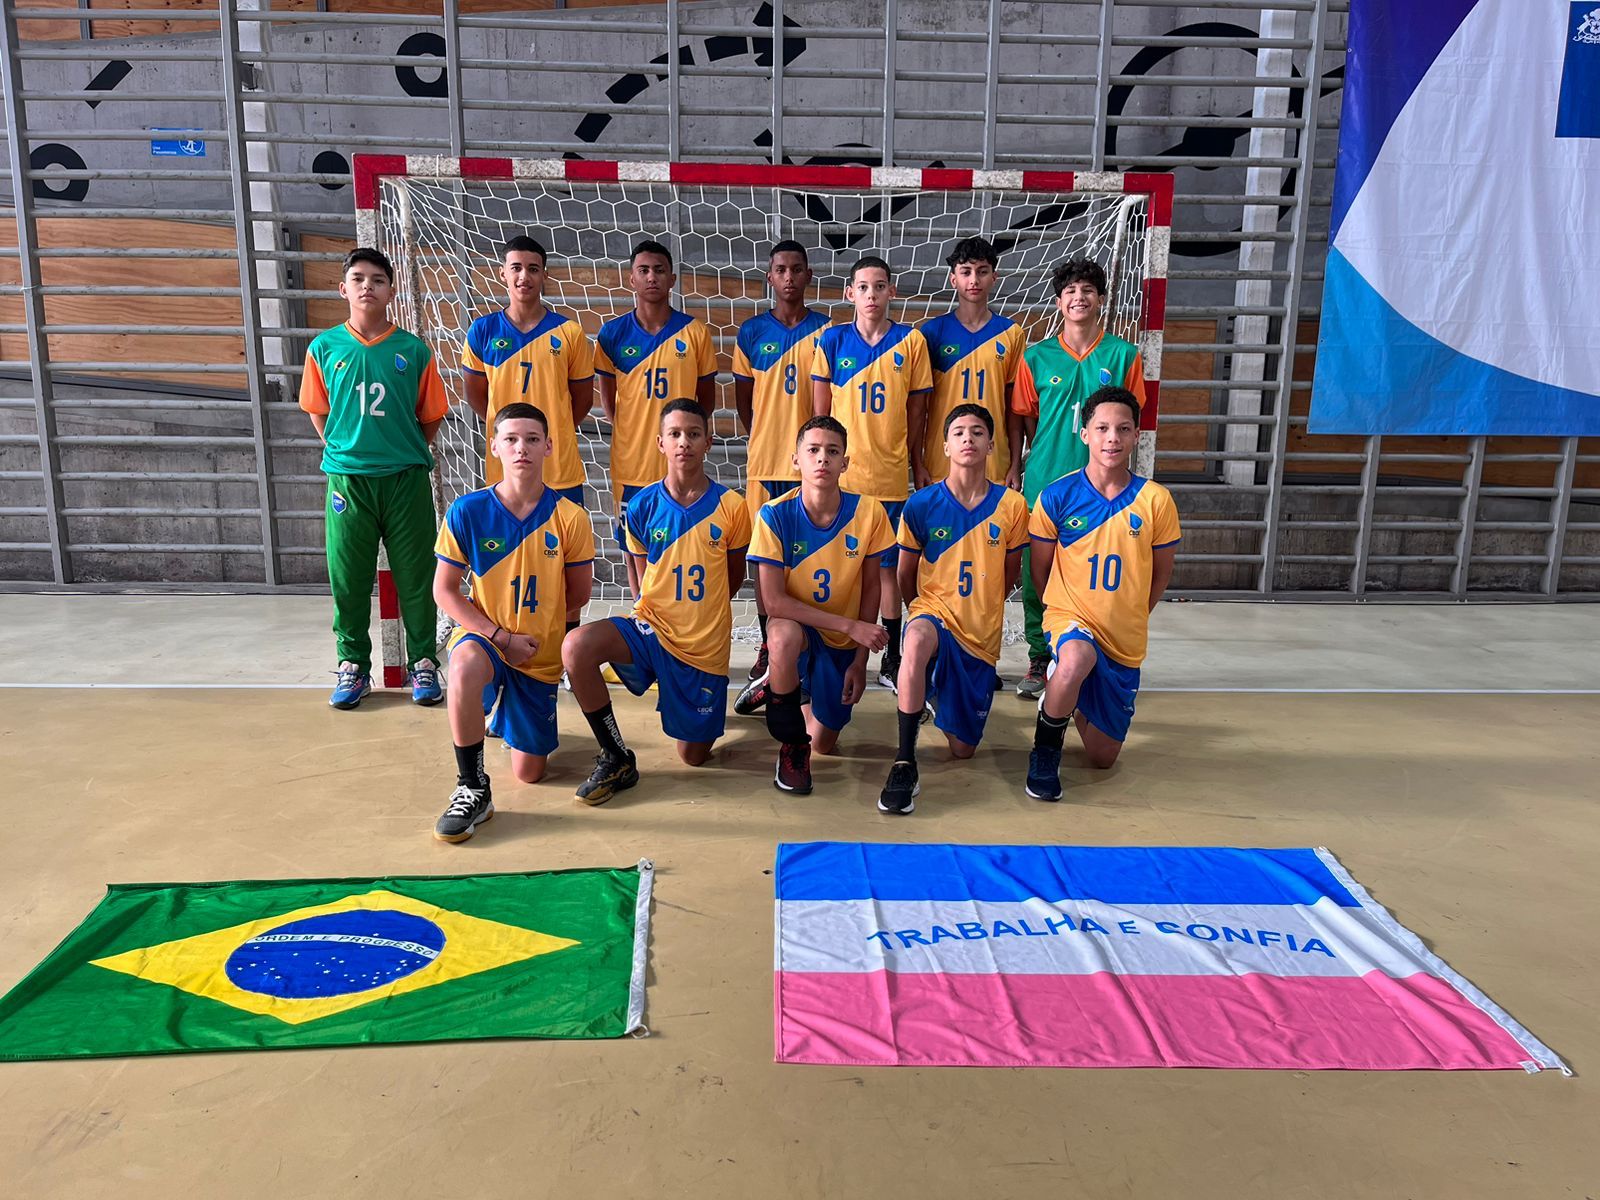 Wender Rocha, Brayan Litig e Ana Elizia fazem parte da delegação do Brasil na competição, além do time de handebol masculino da Escola Irmã Feliciana Garcia, de Vila Velha